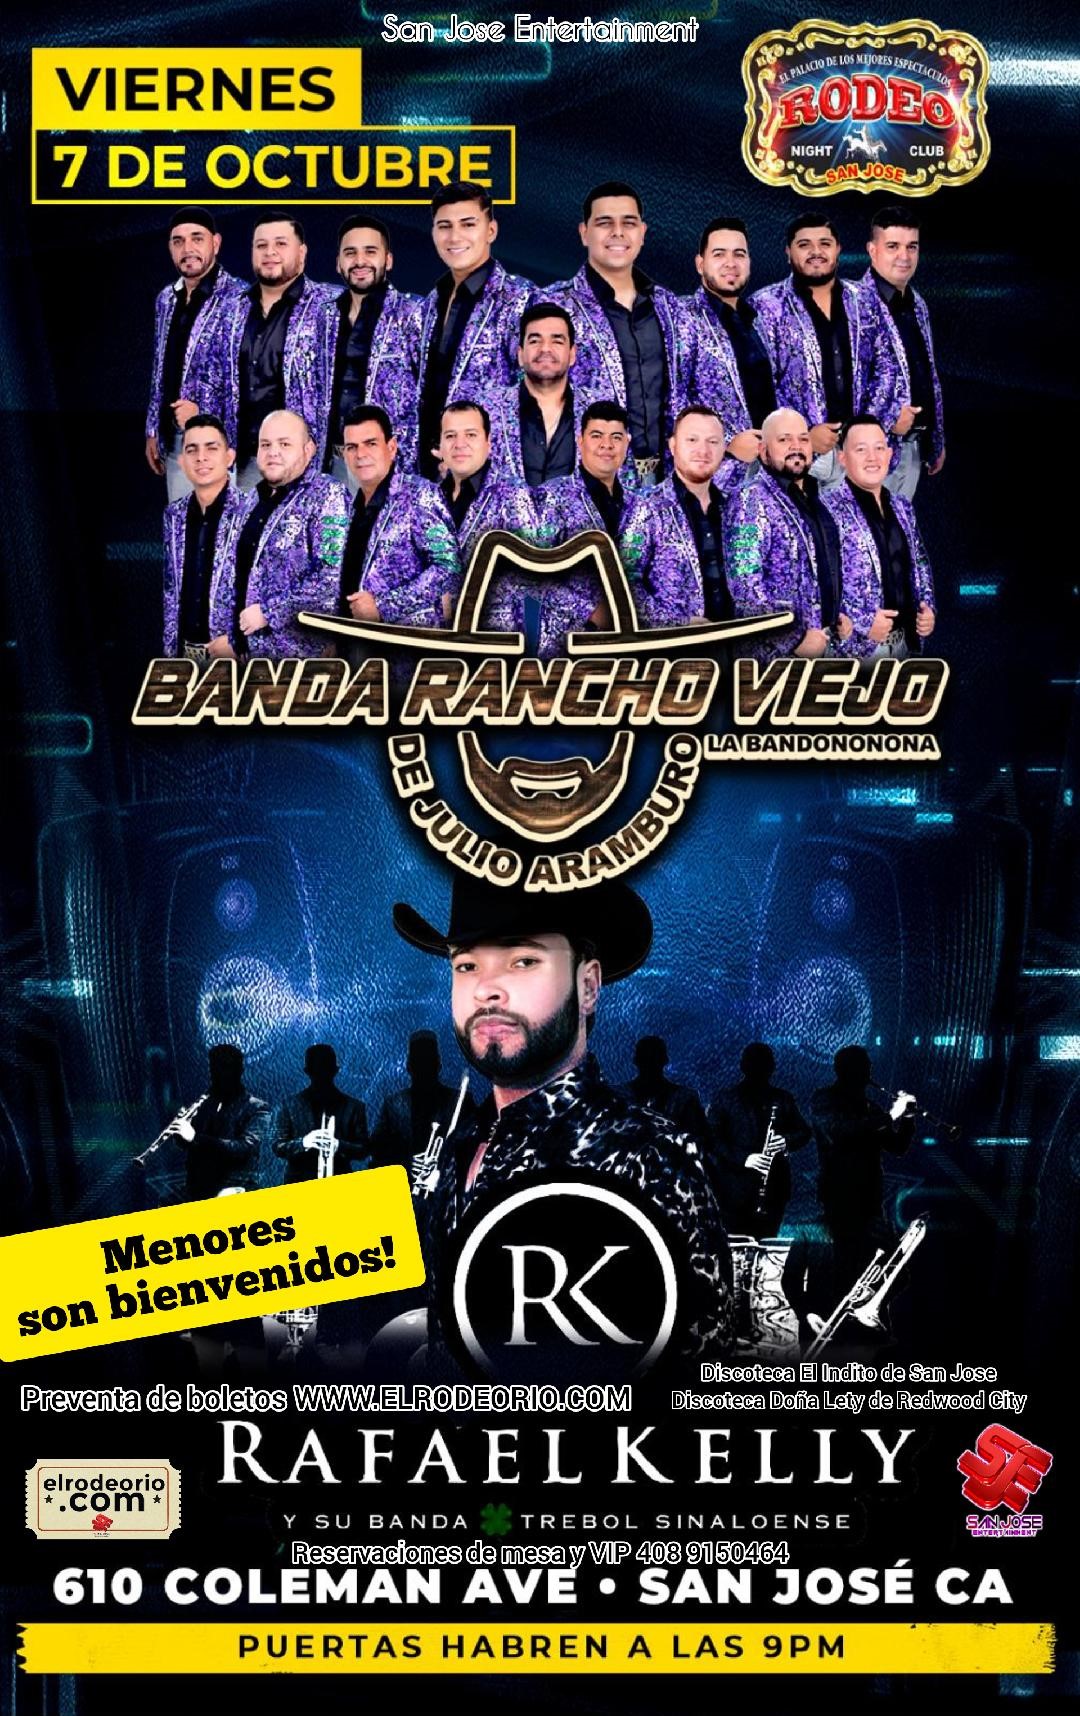 Banda Rancho Viejo,Rafael Kelly y Dubai Norteño Banda  on oct. 07, 21:00@Club Rodeo - Buy tickets and Get information on elrodeorio.com sanjoseentertainment